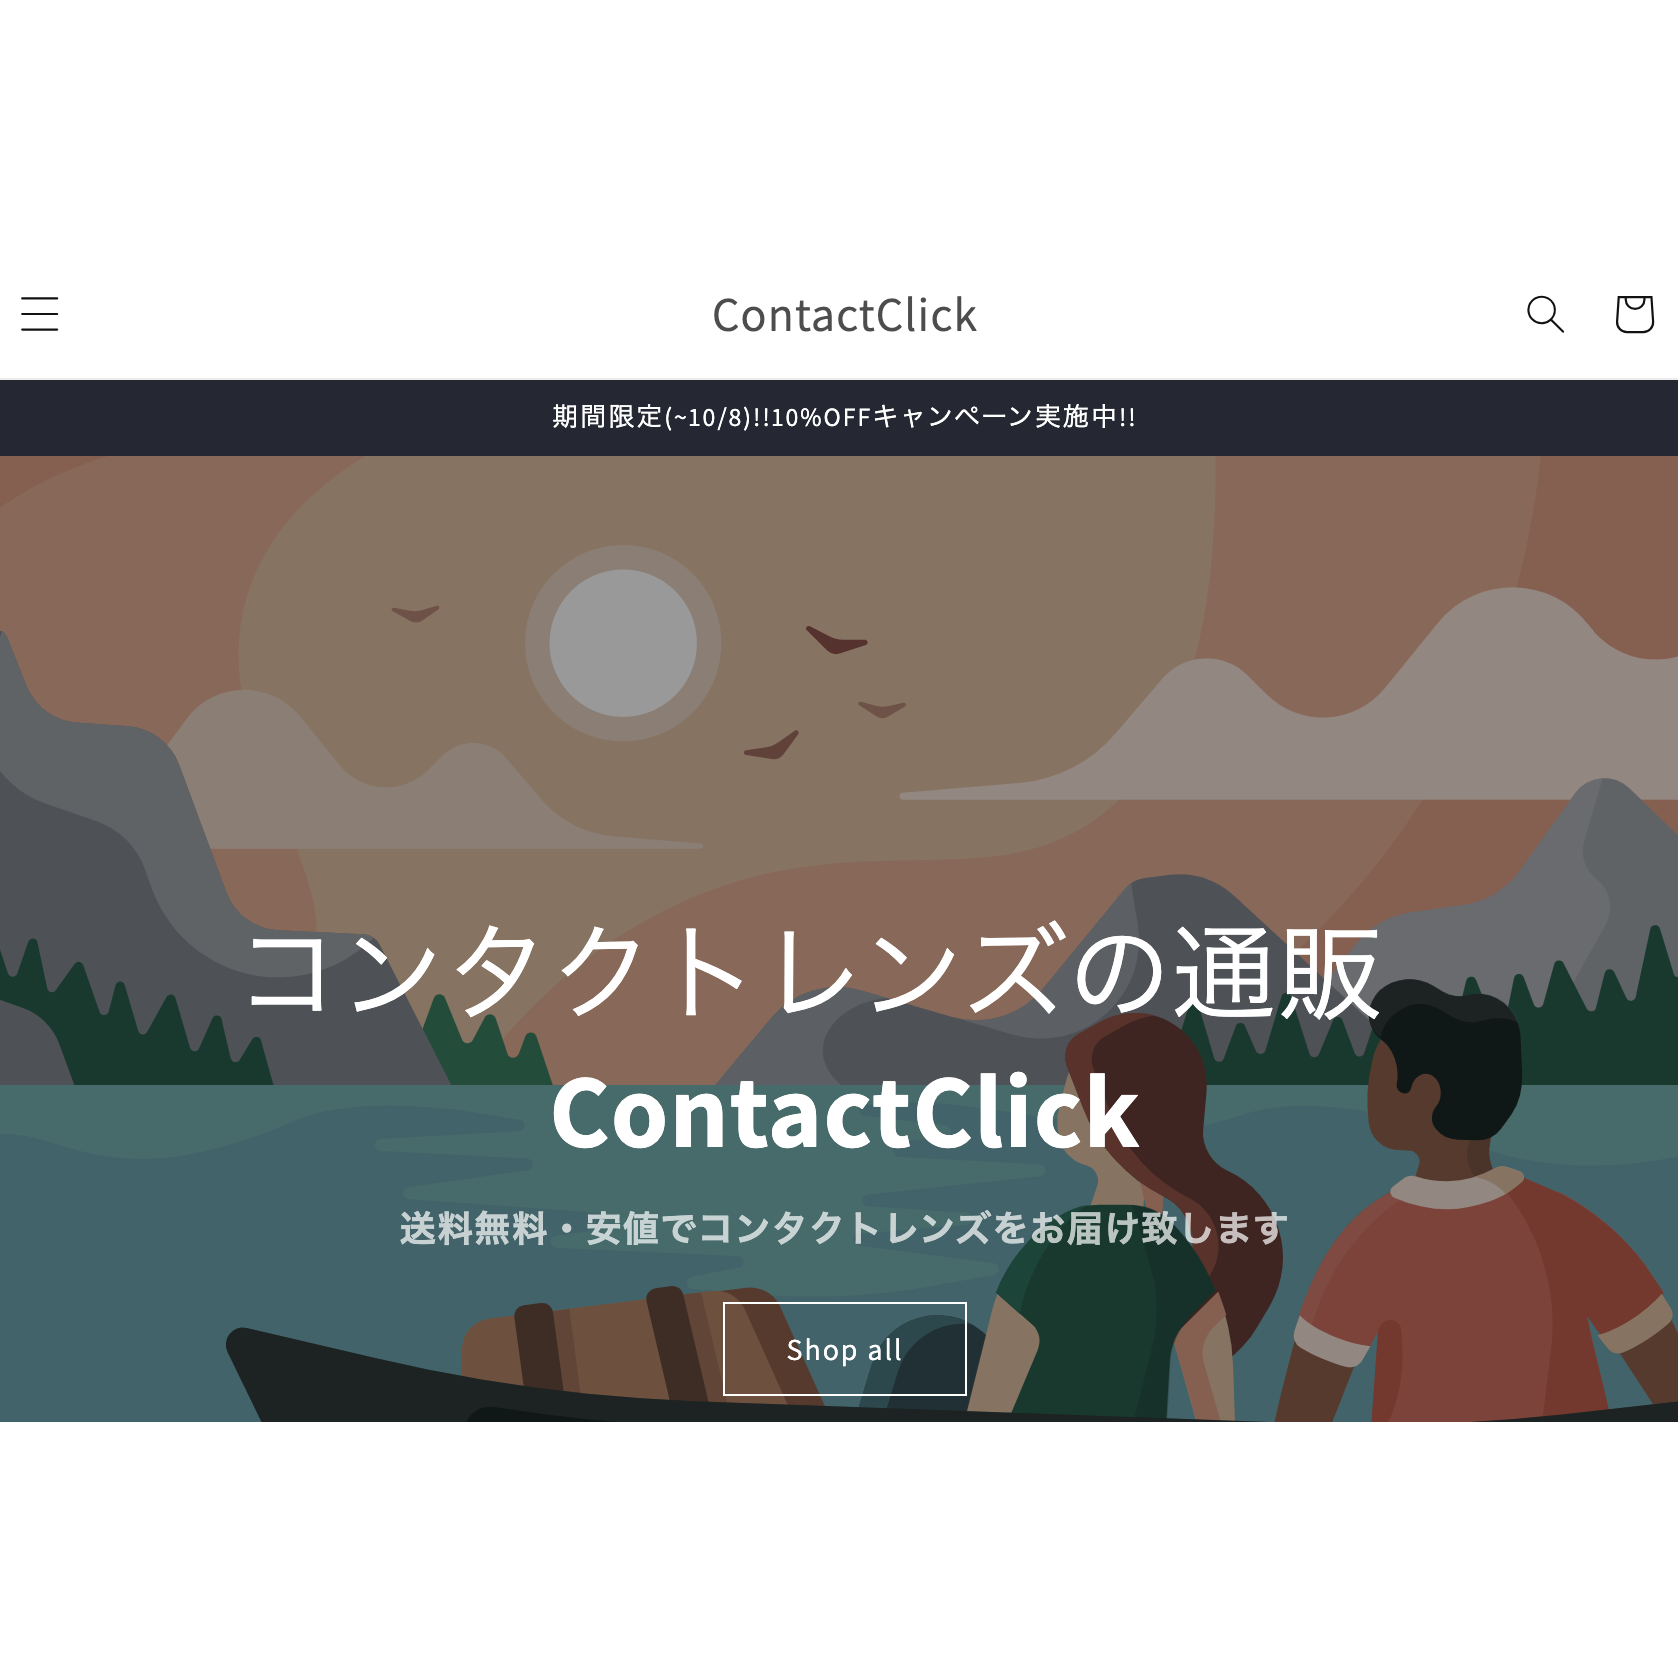 コンタクトレンズのECサイト「ContactClick(コンタクトクリック)」